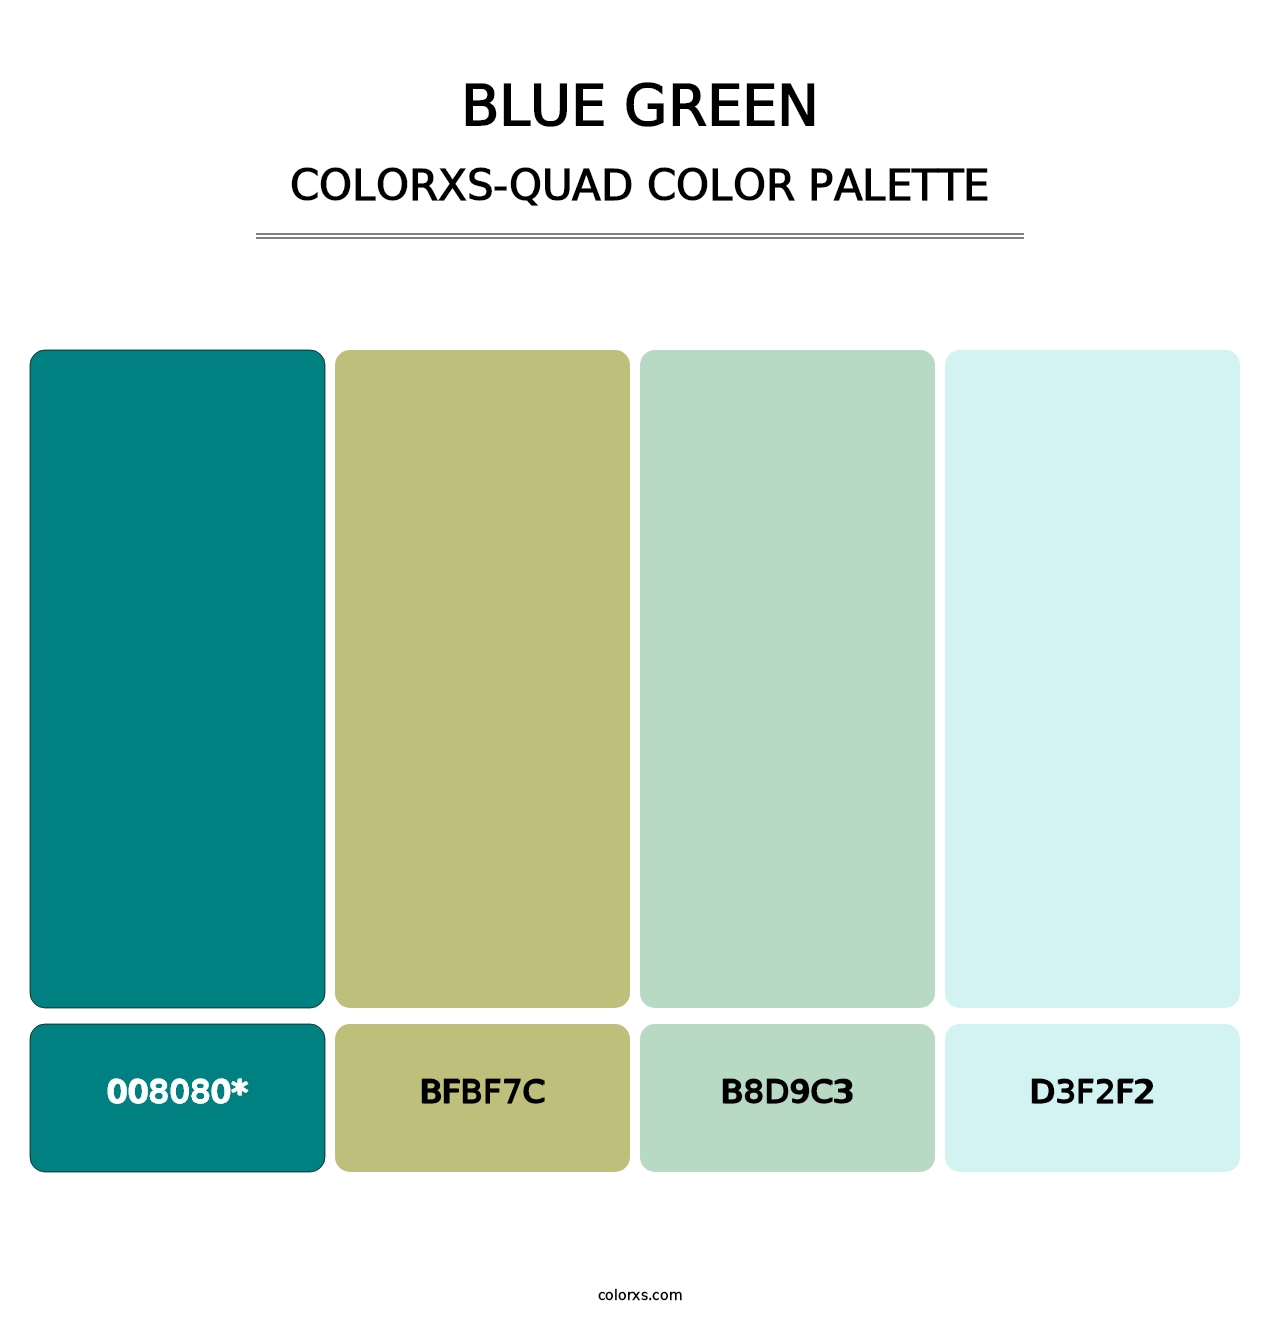 Blue Green - Colorxs Quad Palette